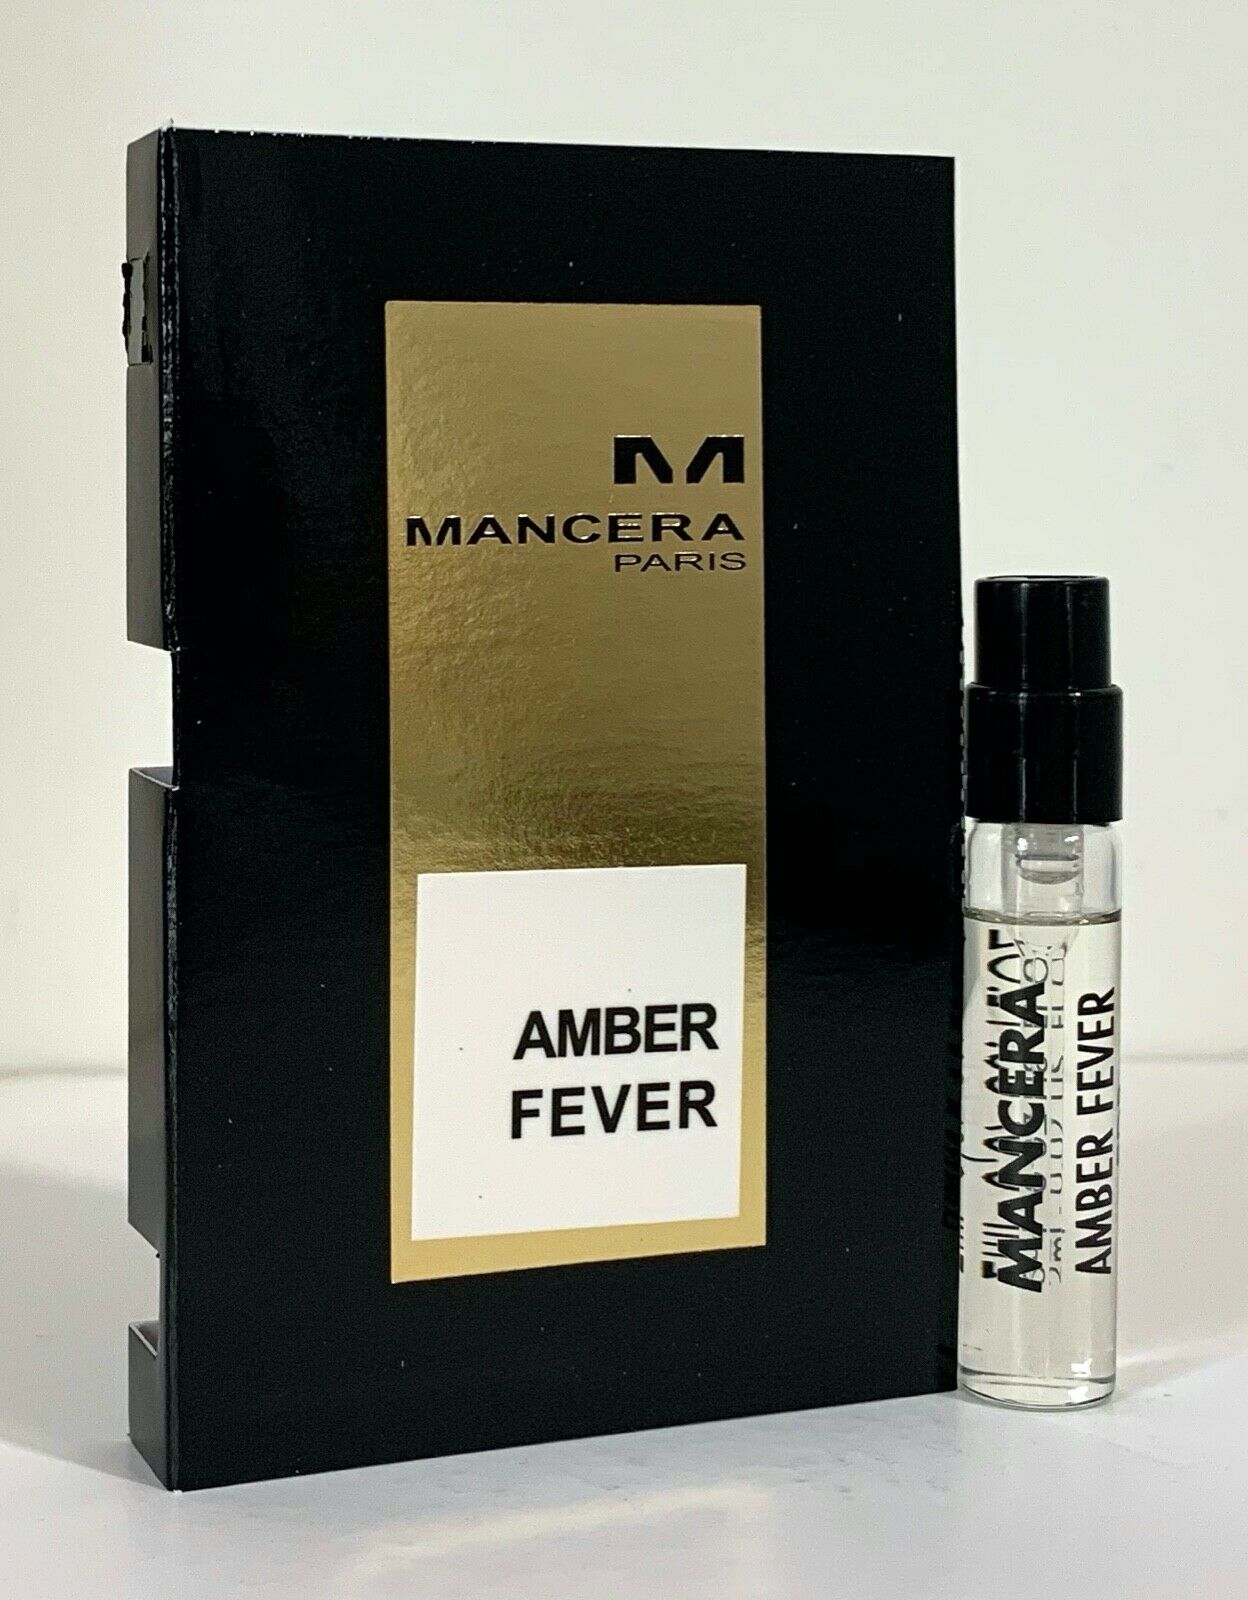 Mancera Amber Fever official scent sample 2ml 0.06 fl. oz., Mancera Amber Fever 2ml 0.06 fl. oz. official perfume sample